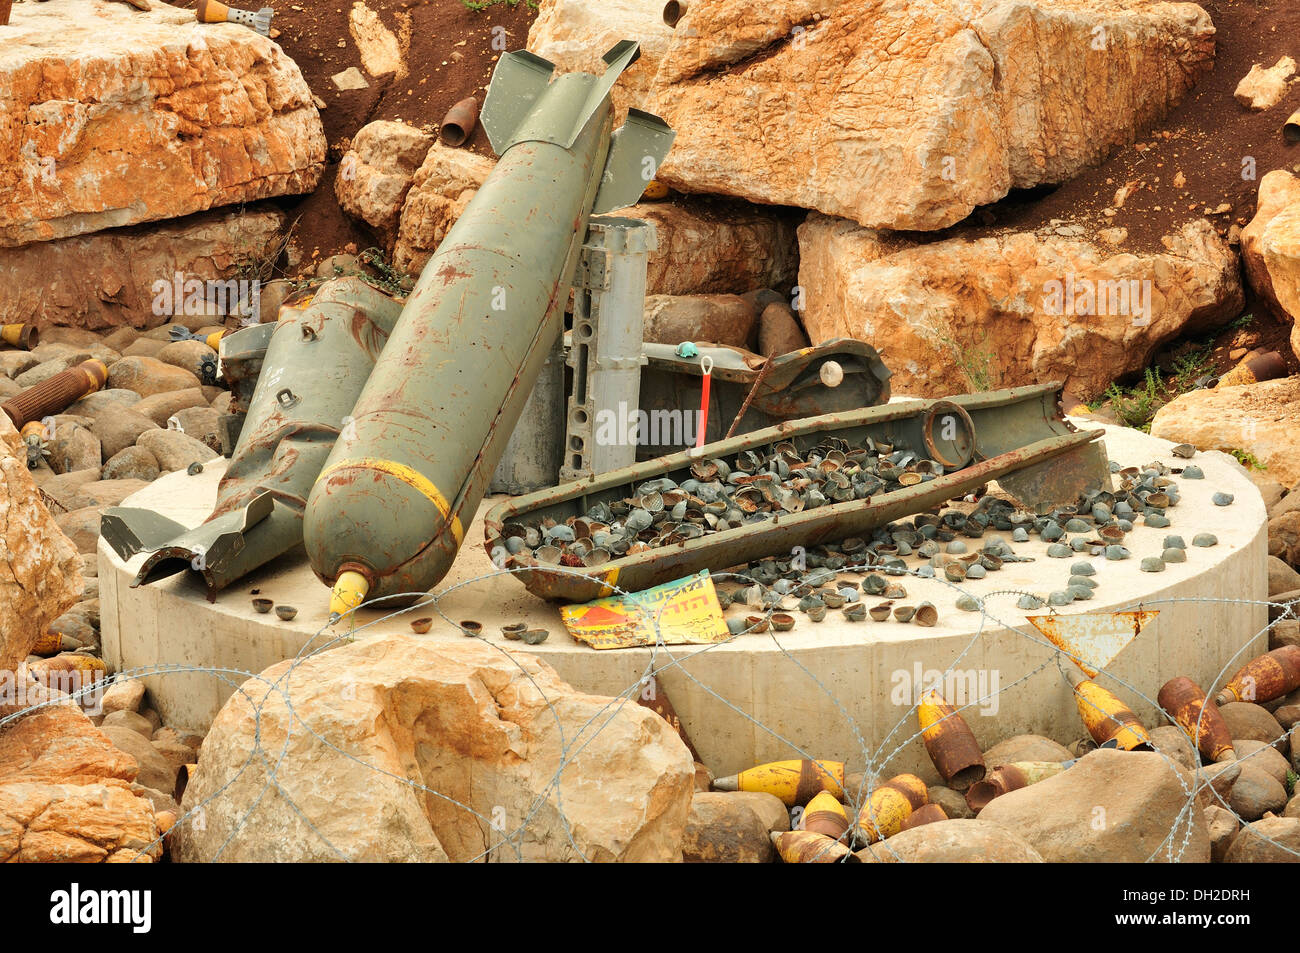 Le bombe a grappolo o di munizioni a grappolo, sono le armi contenenti più esplosivo submunizioni. Mleeta, Libano Foto Stock